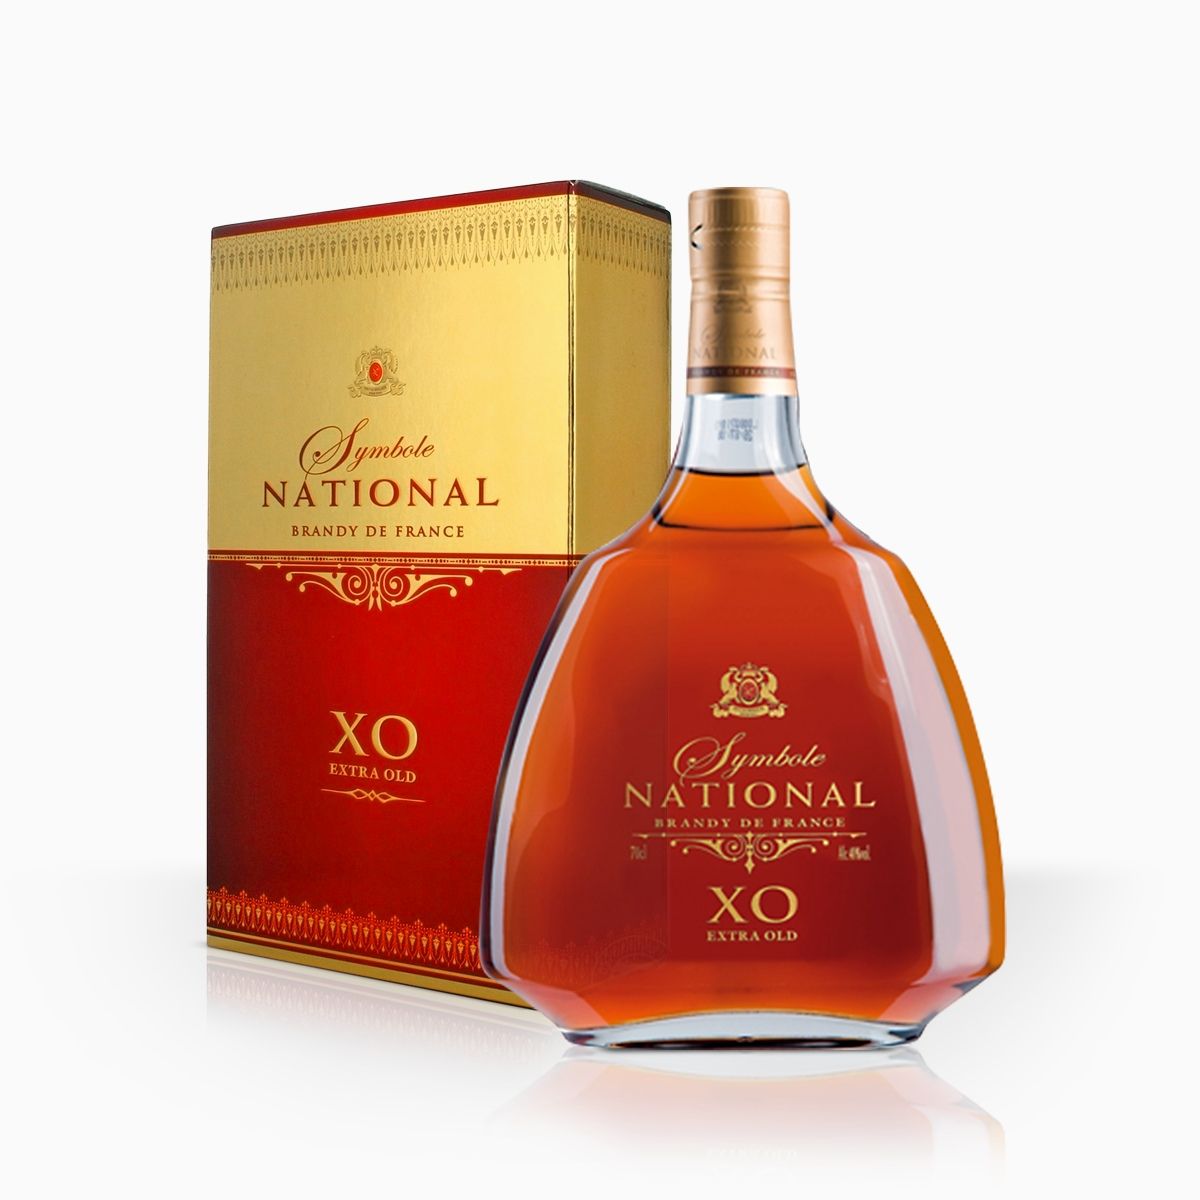 Brandy Symbole National Xo 40% 0,7l